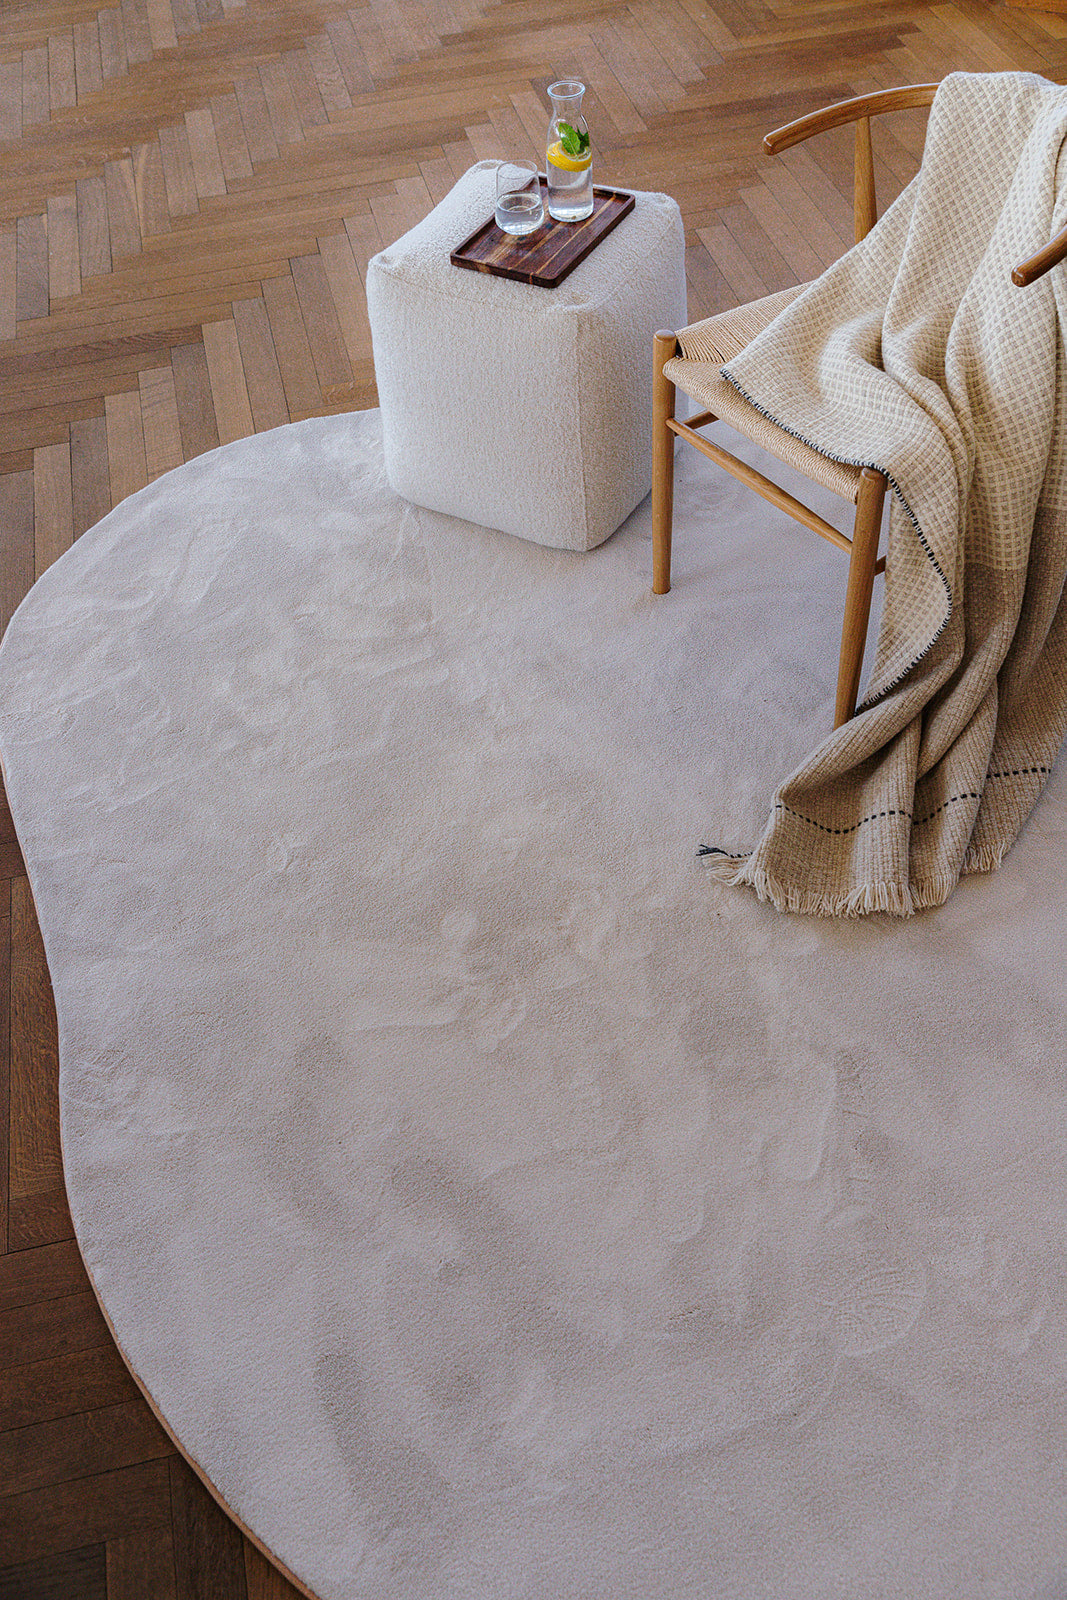 Interieurinspiratie houten vloer met bijzettafel en stoel op organische vorm duurzaam witkleurig tapijt.